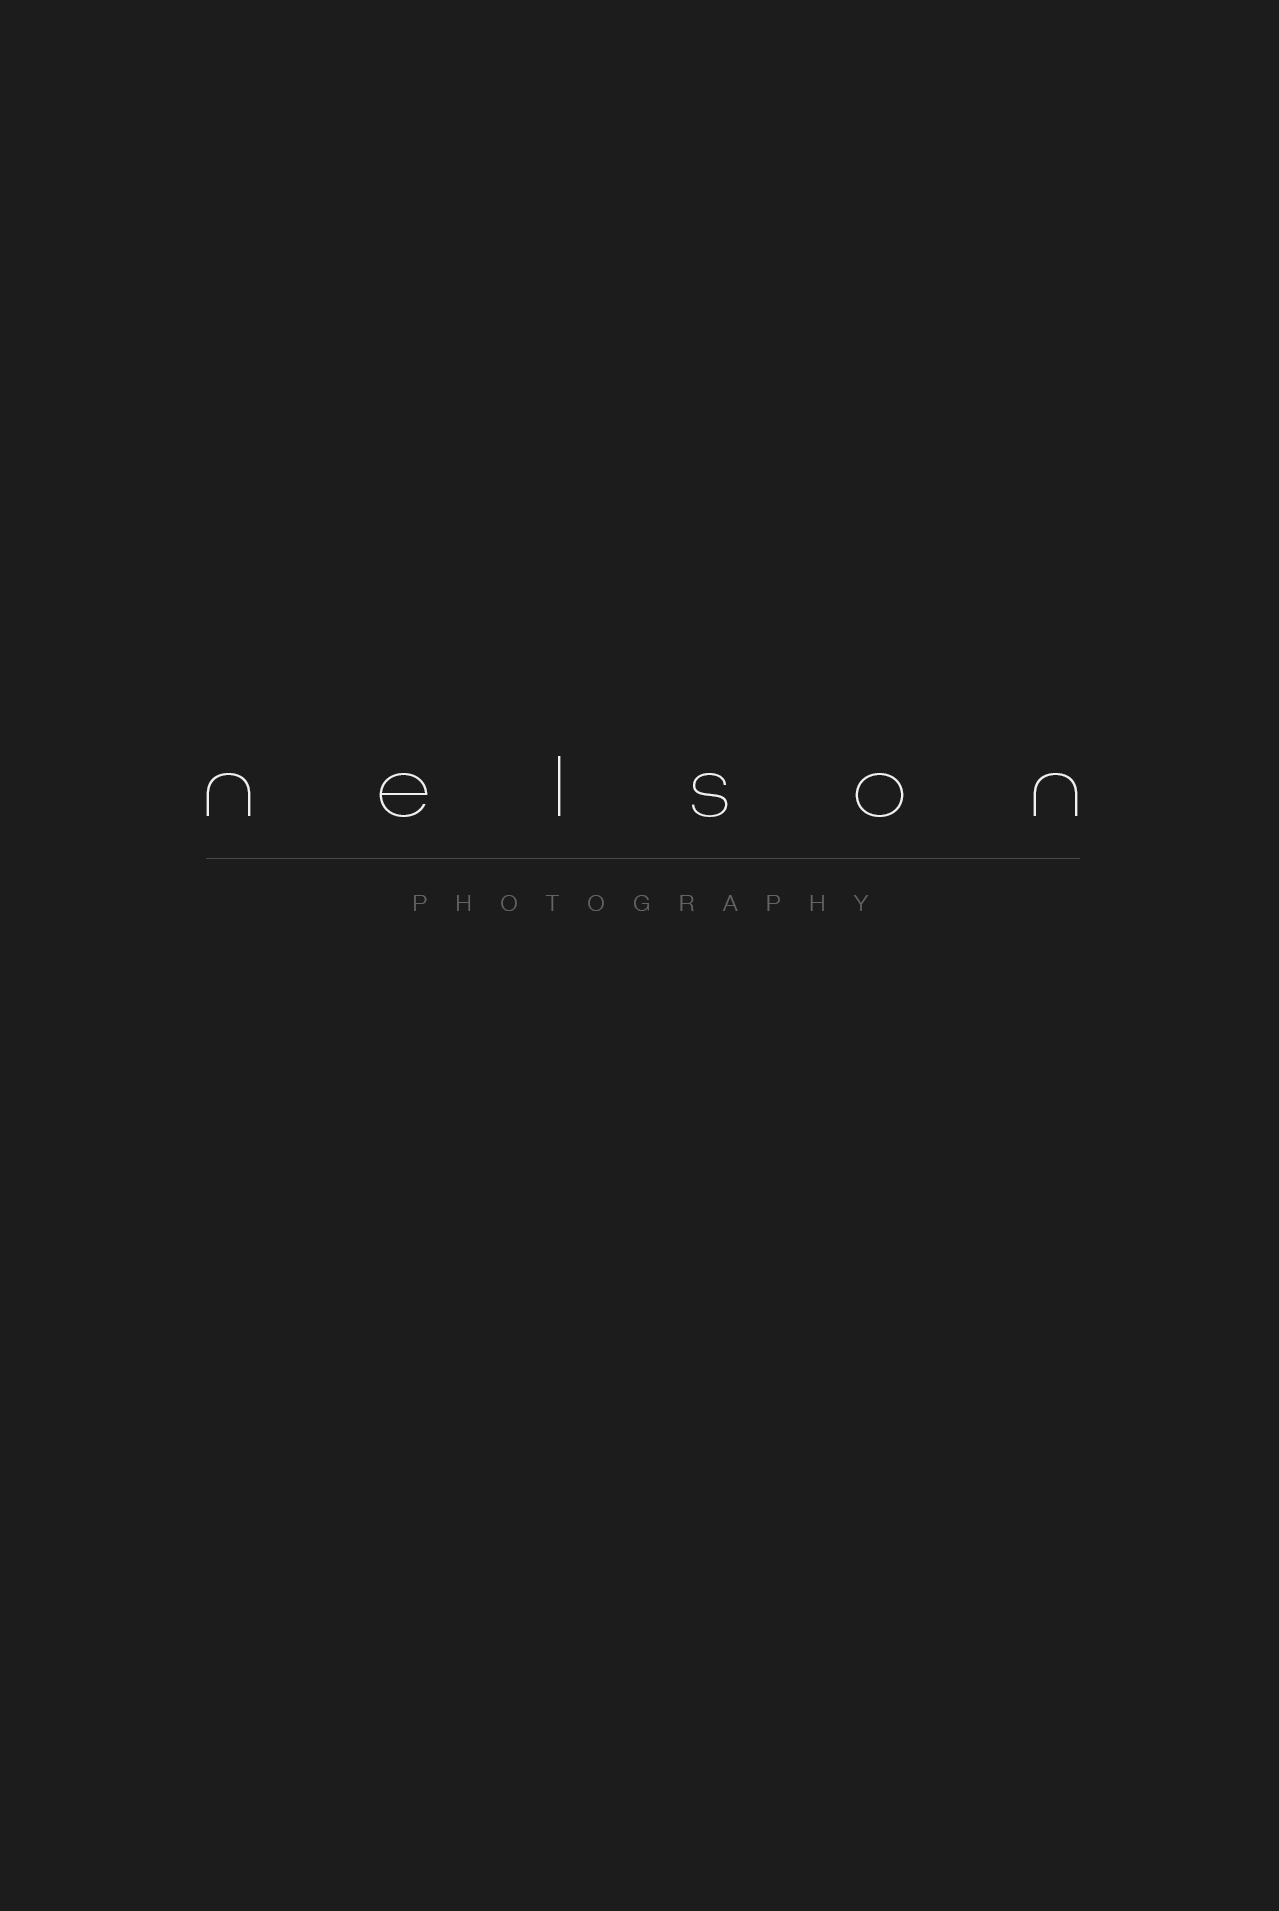 nelson-photography-logo-pg.jpg